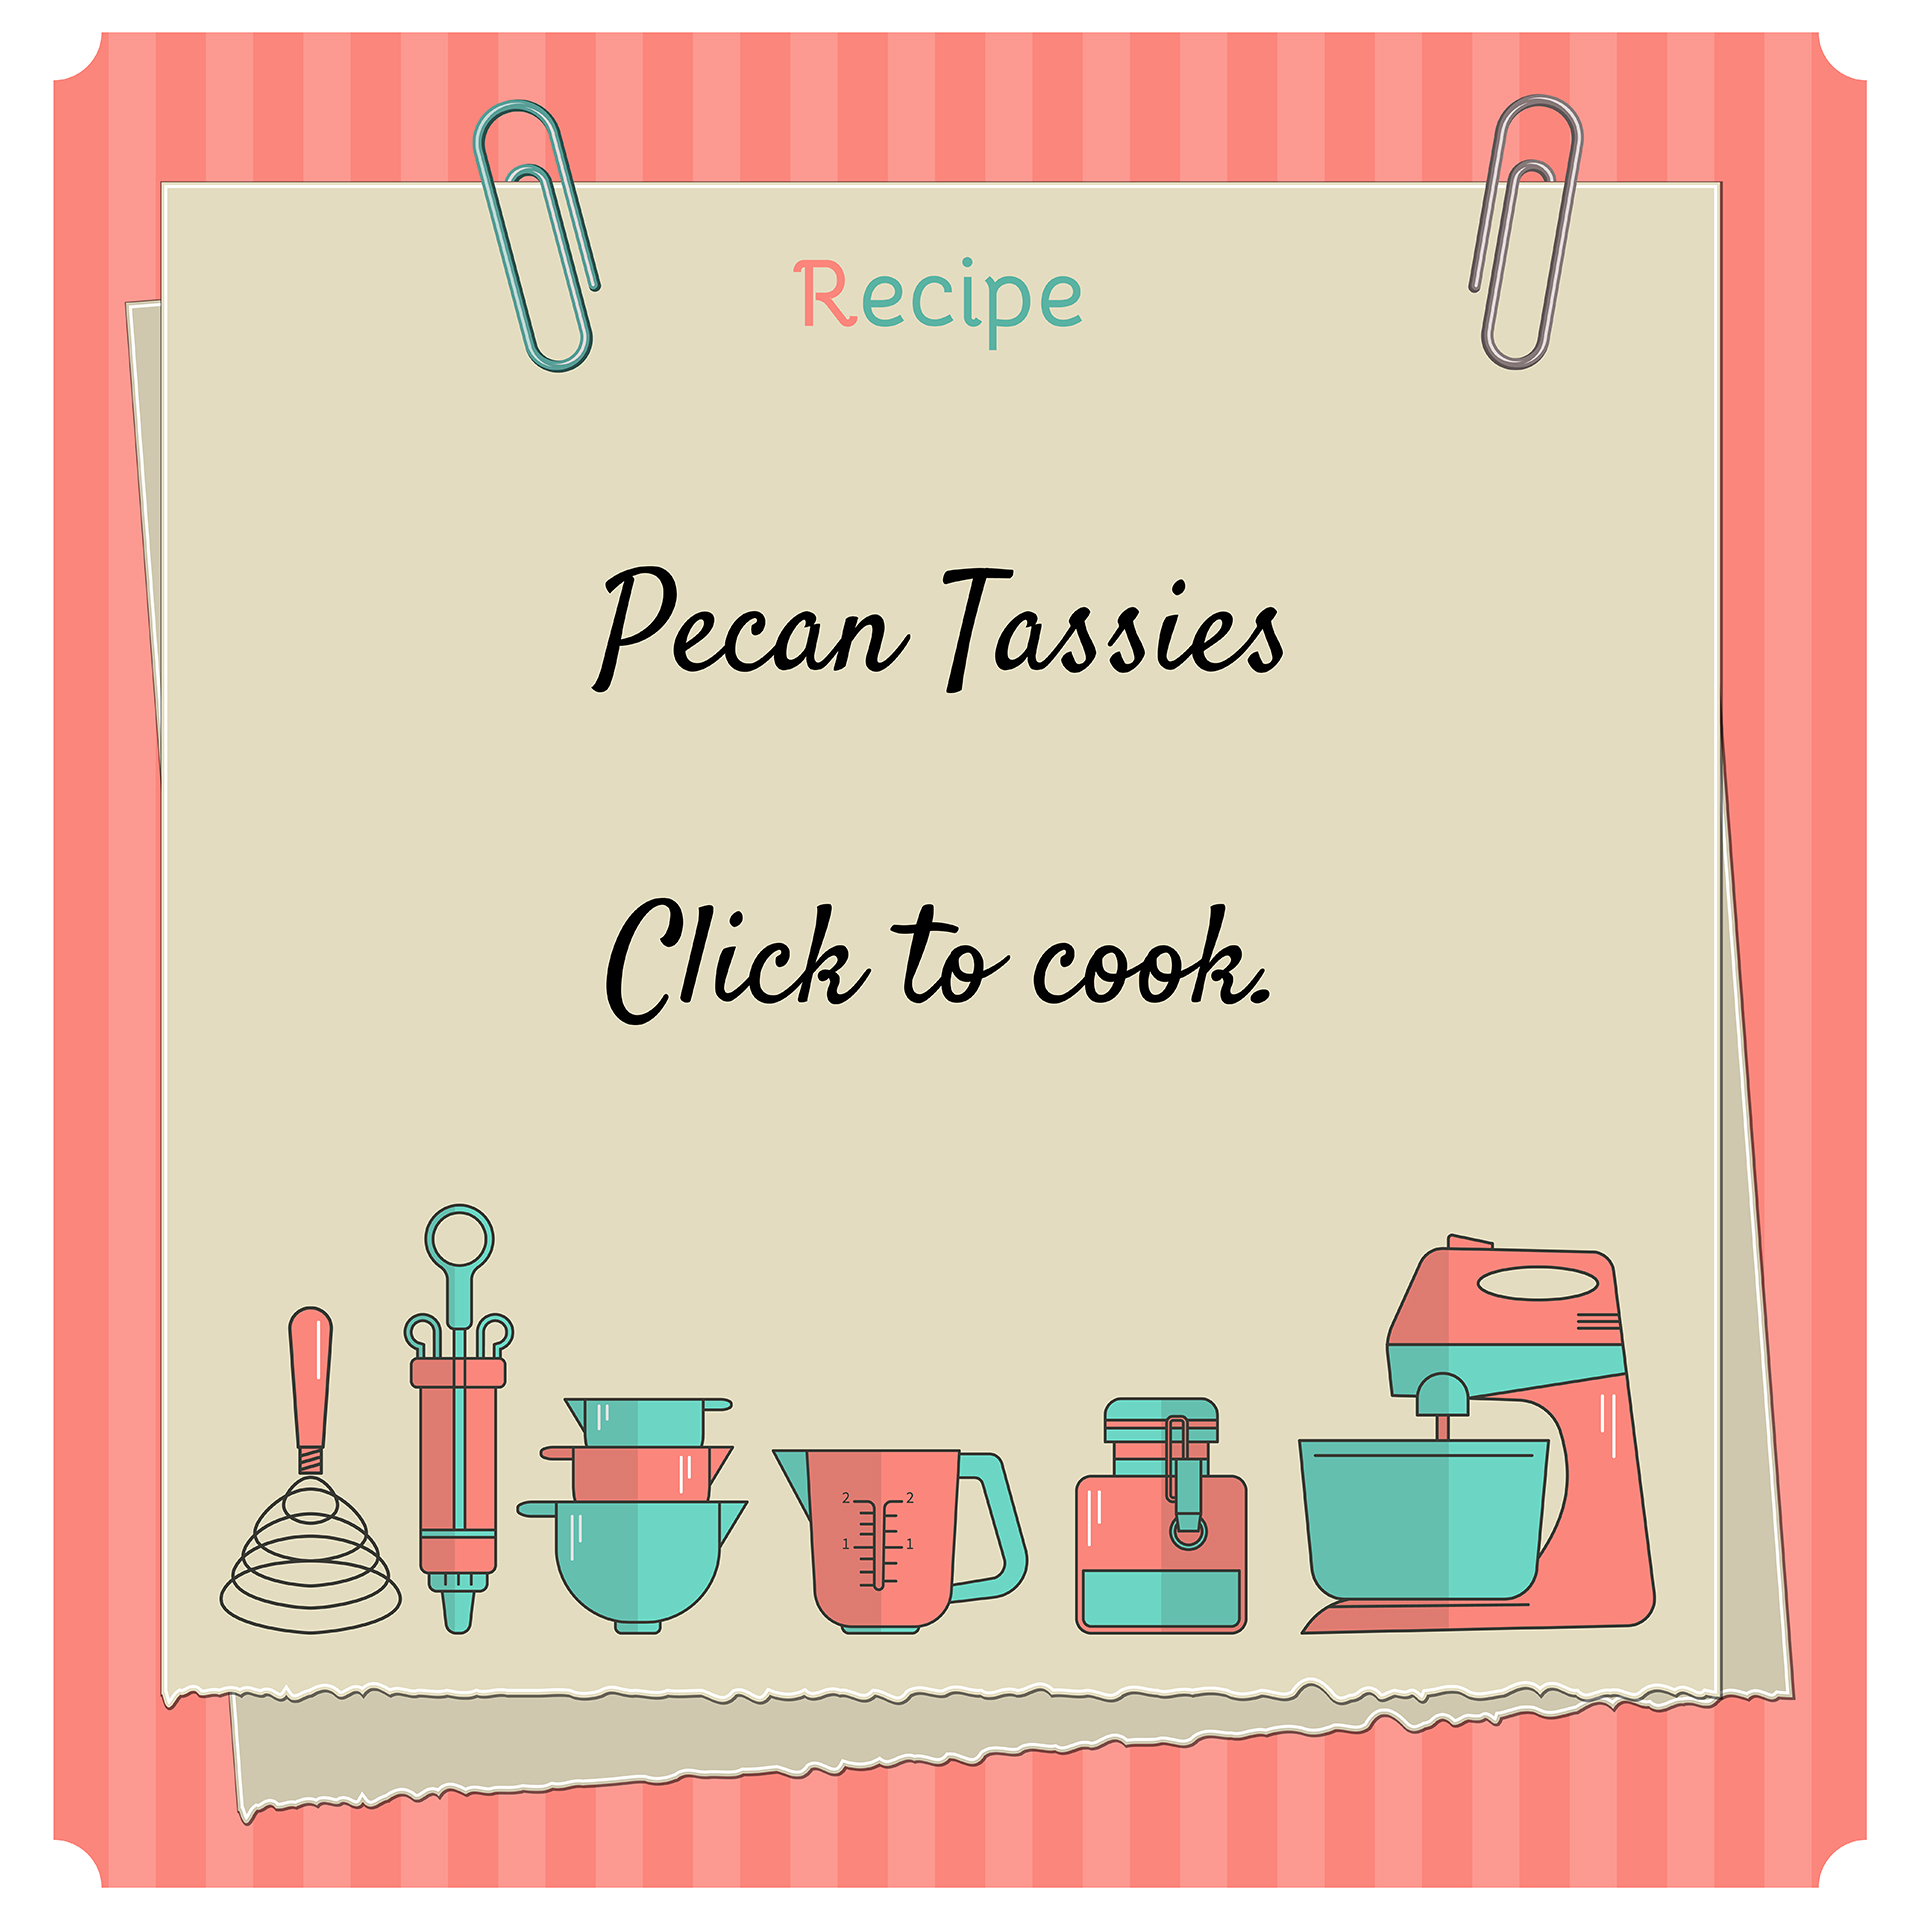 CONDENSED-Pecan-Tassies-Recipe